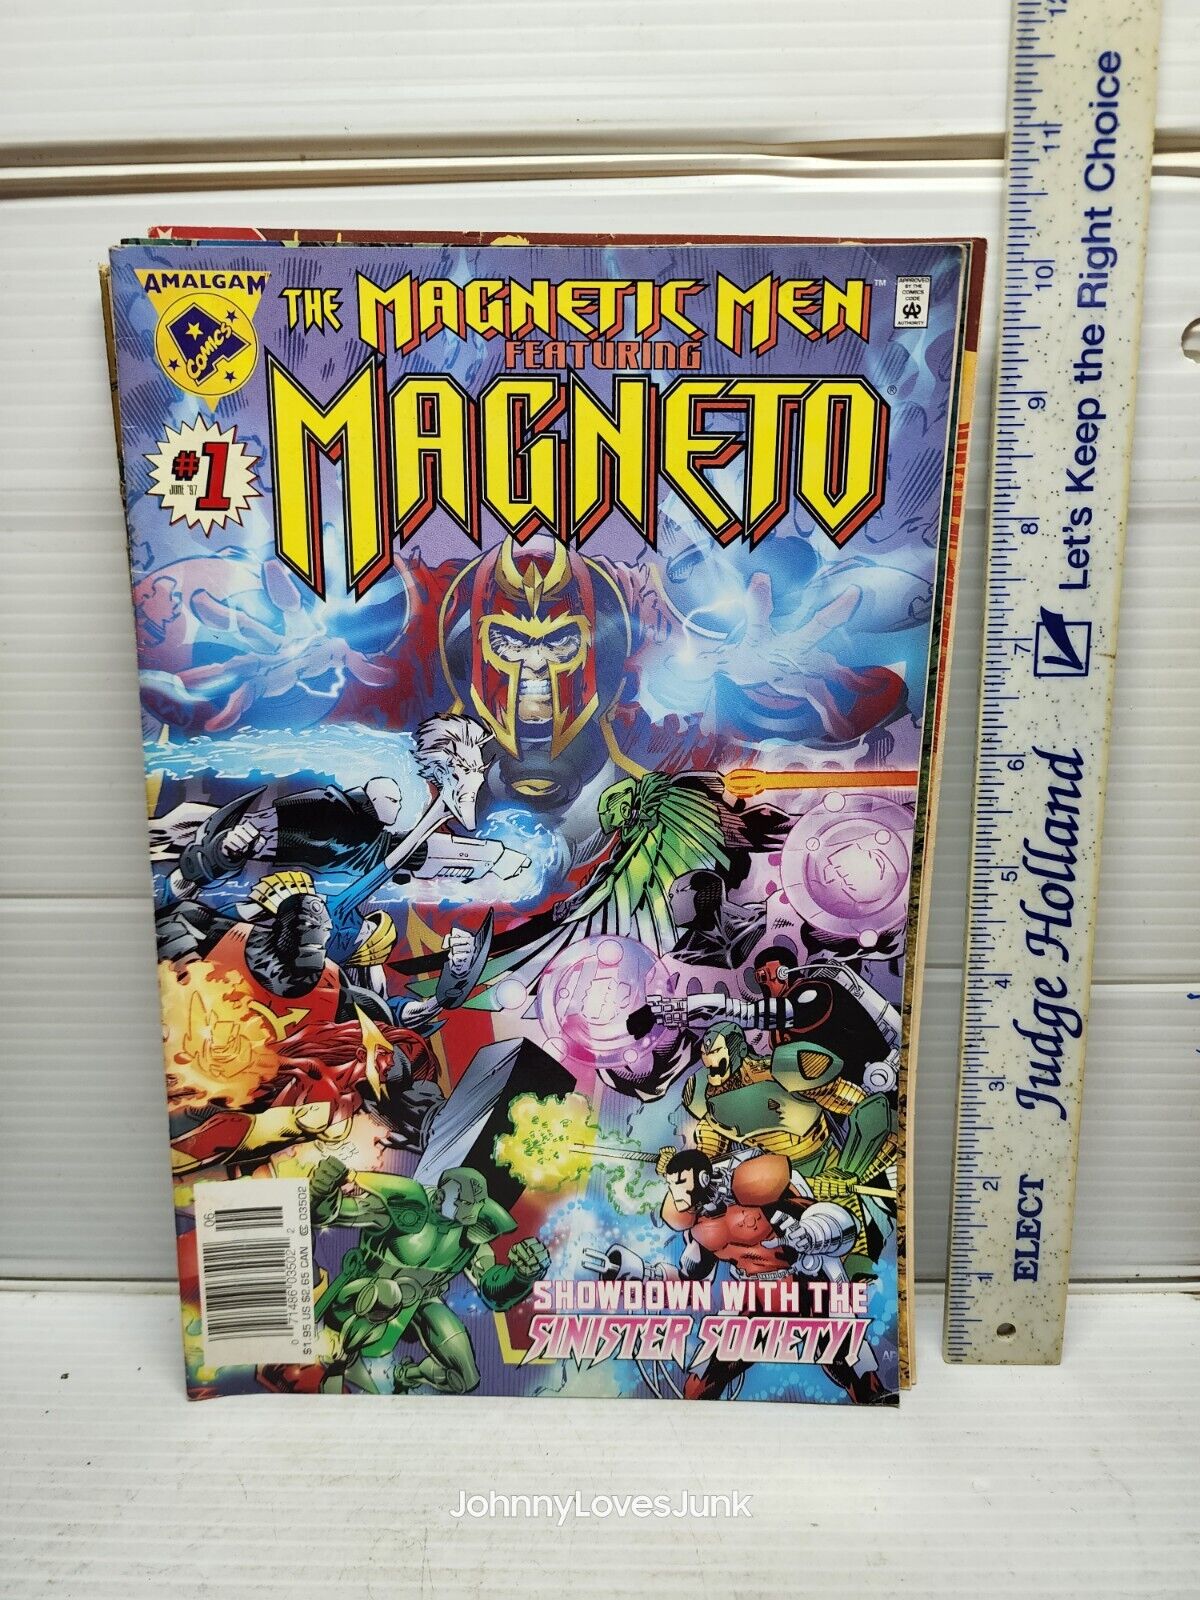 Comic Book The Magnetic Men Featuring Magneto #1 June 97 Amalgam 